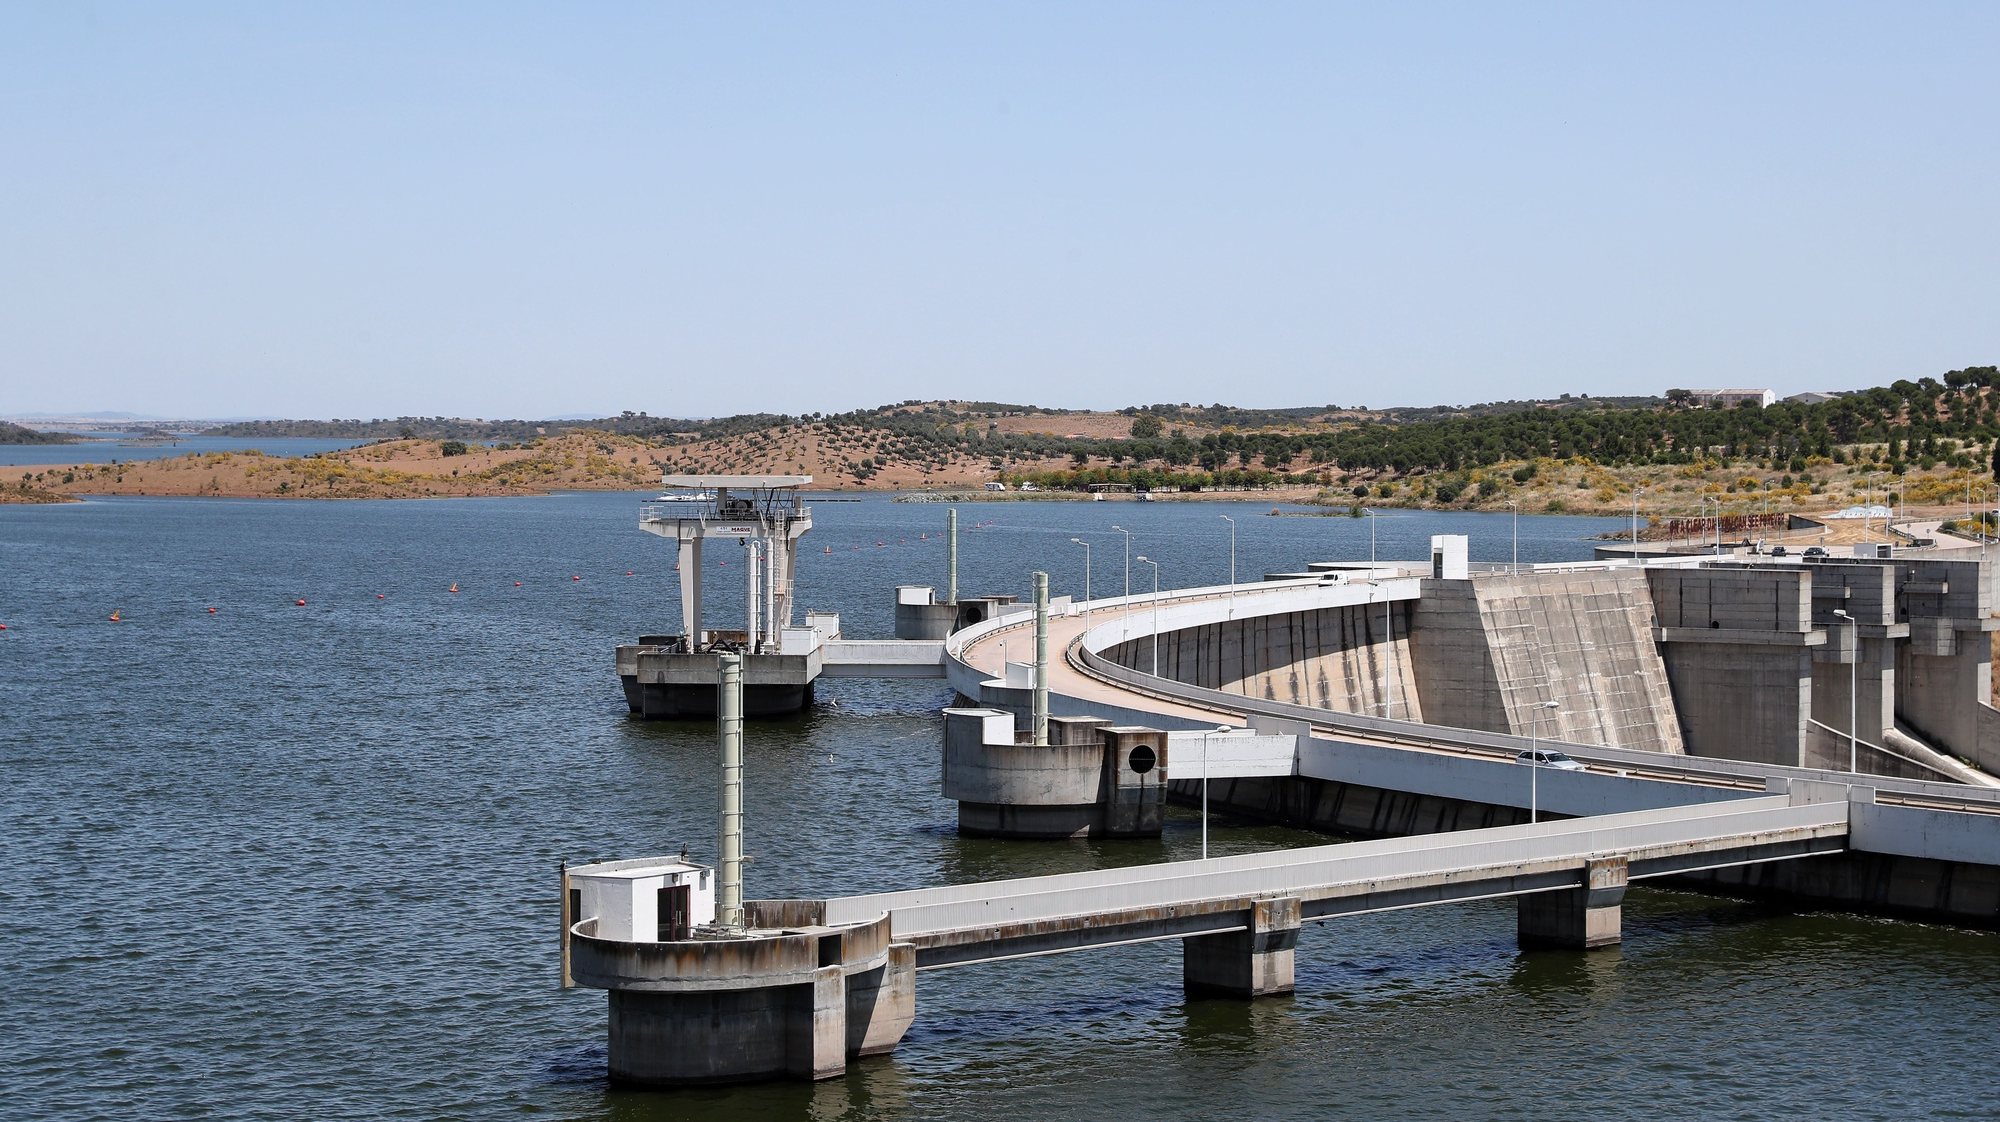 A albufeira da barragem de Alqueva, praticamente no seu limite máximo, hoje à cota de 150 metros (152 metros é a capacidade máxima), com 3701.29 hm3 (hectómetros cúbicos) de água. A albufeira do Alqueva atingiu, pela primeira vez, a capacidade máxima em 12 de janeiro de 2010, quase oito anos após ter começado a encher (a 08 de fevereiro de 2002), quando se fecharam as comportas da barragem. Portel, 21 de maio de 2021. NUNO VEIGA/LUSA